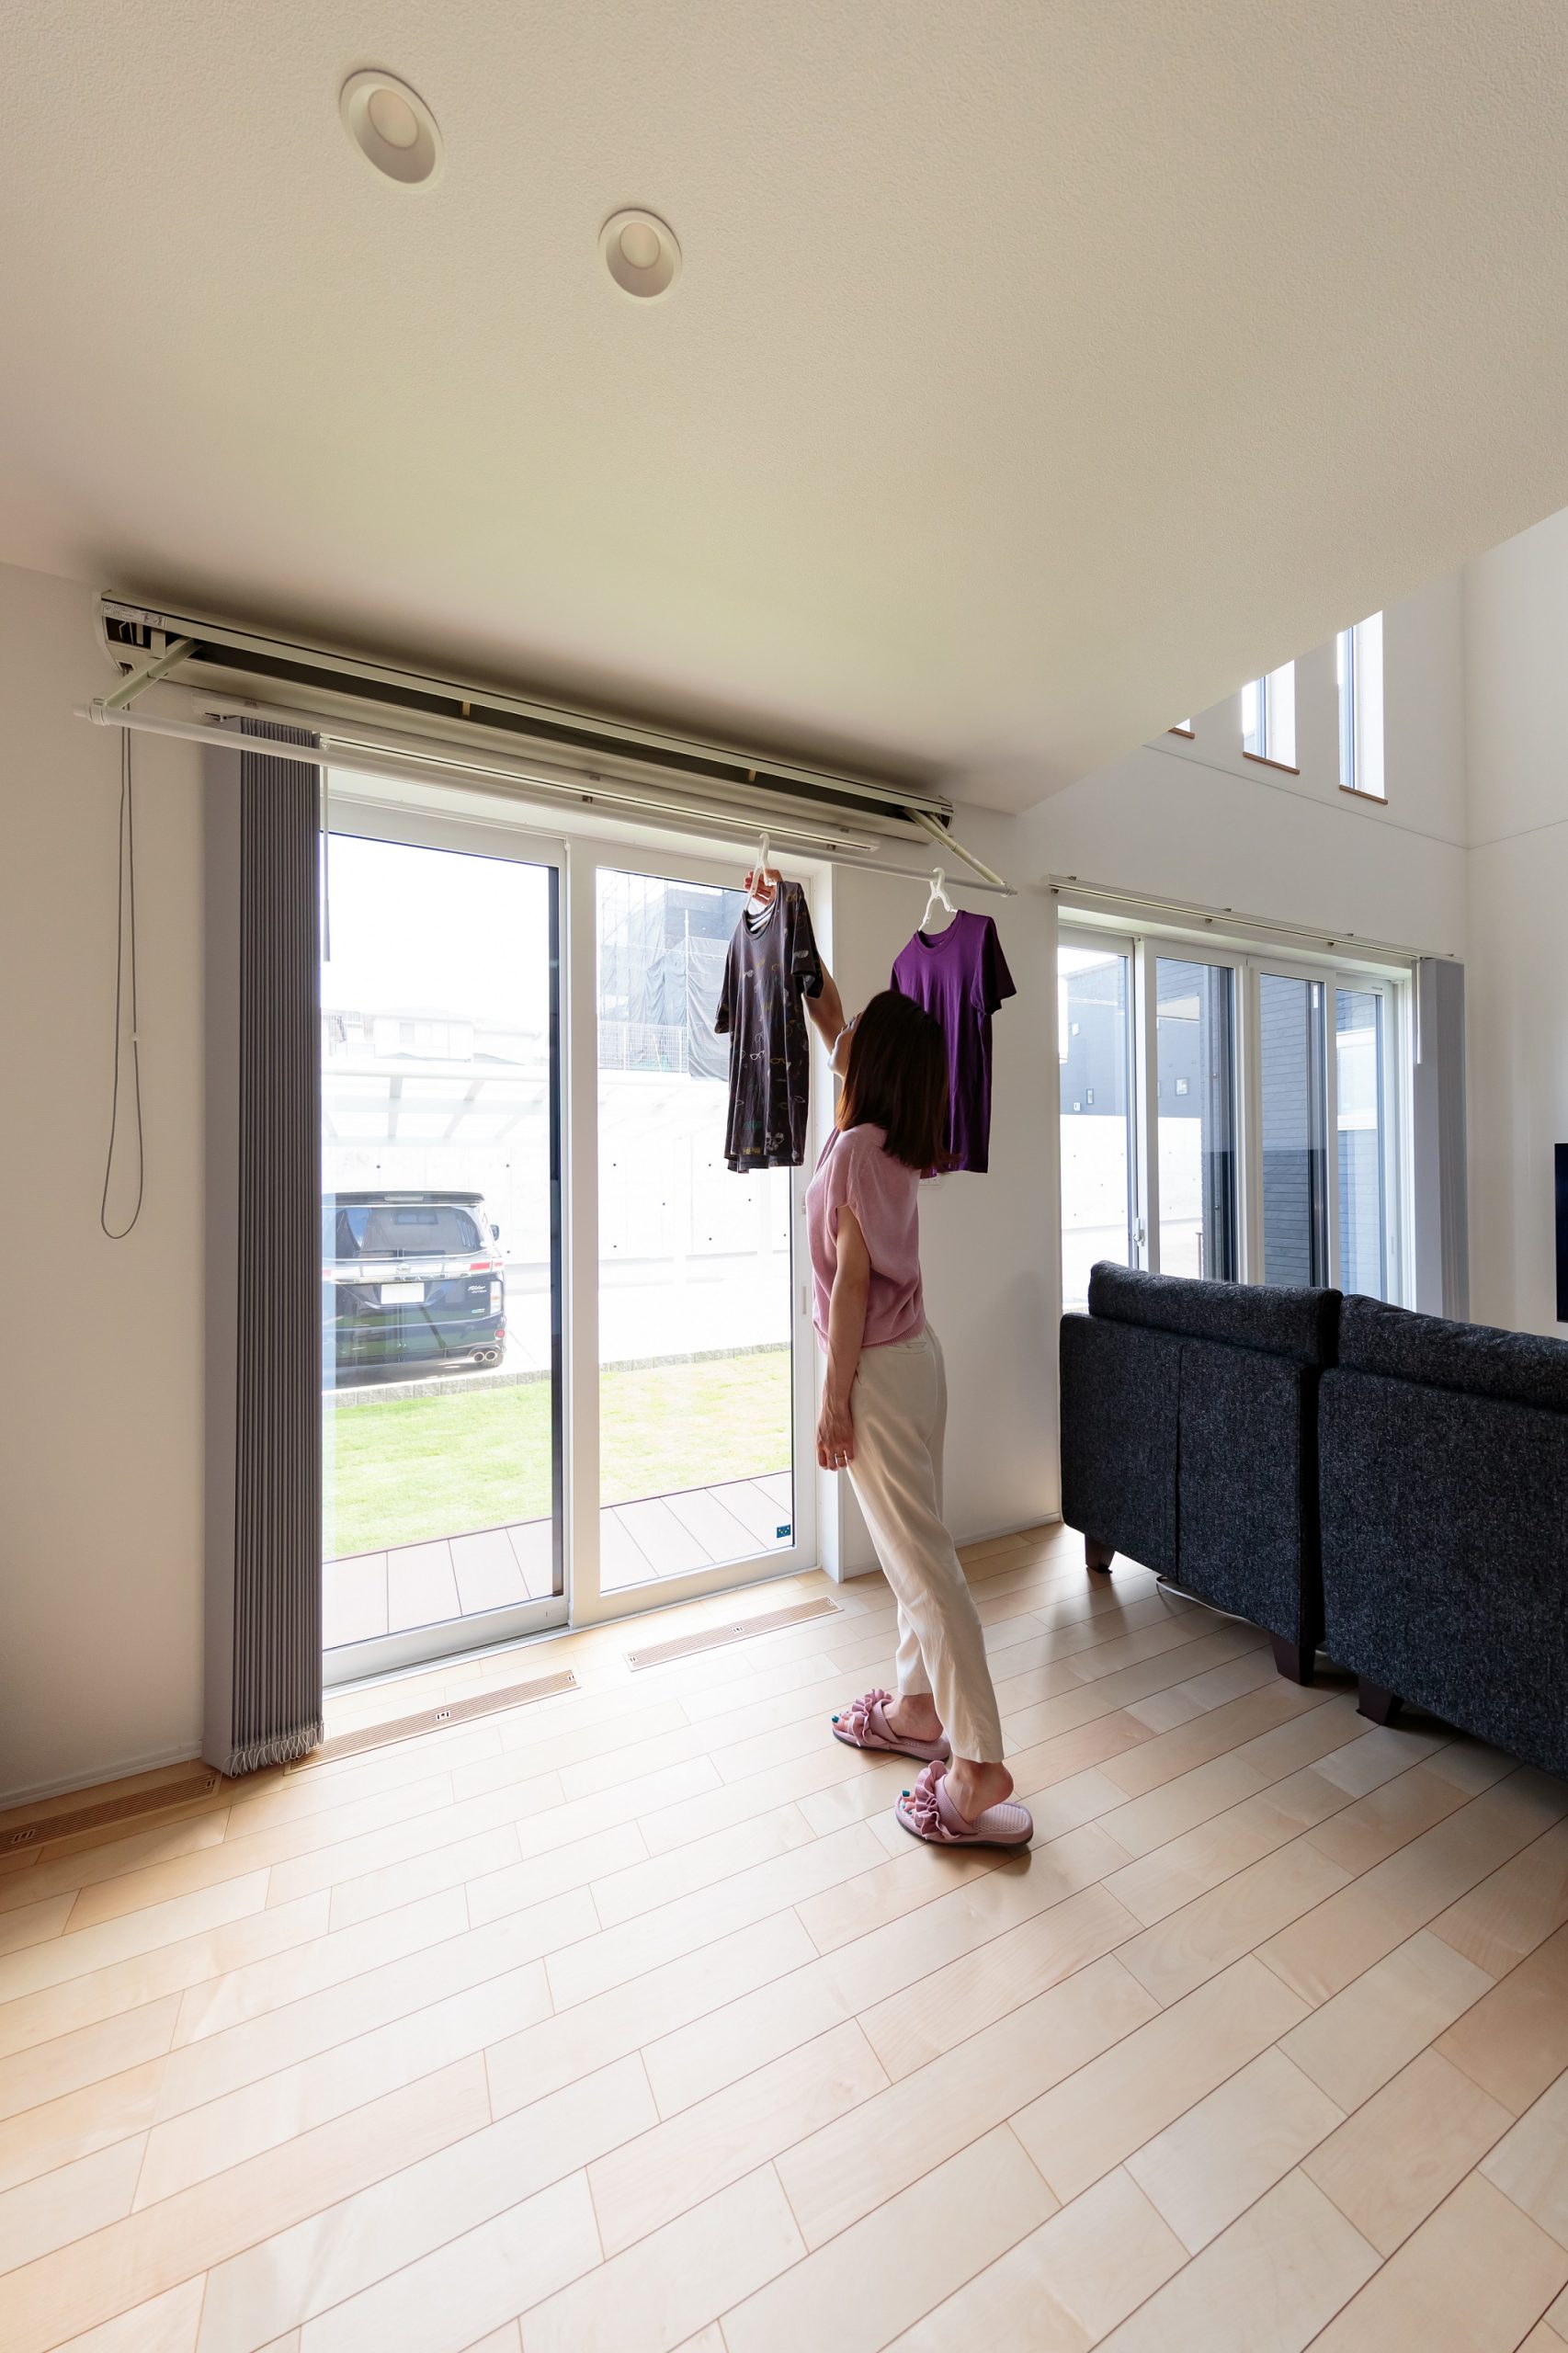 室内干しに対応できるよう、日当たりのいい窓辺に物干しバーを設置。ウッドデッキ側にも物干し金具を取り付けた、外干しと室内干しを使い分けられるコンパクトな洗濯動線がポイントです。